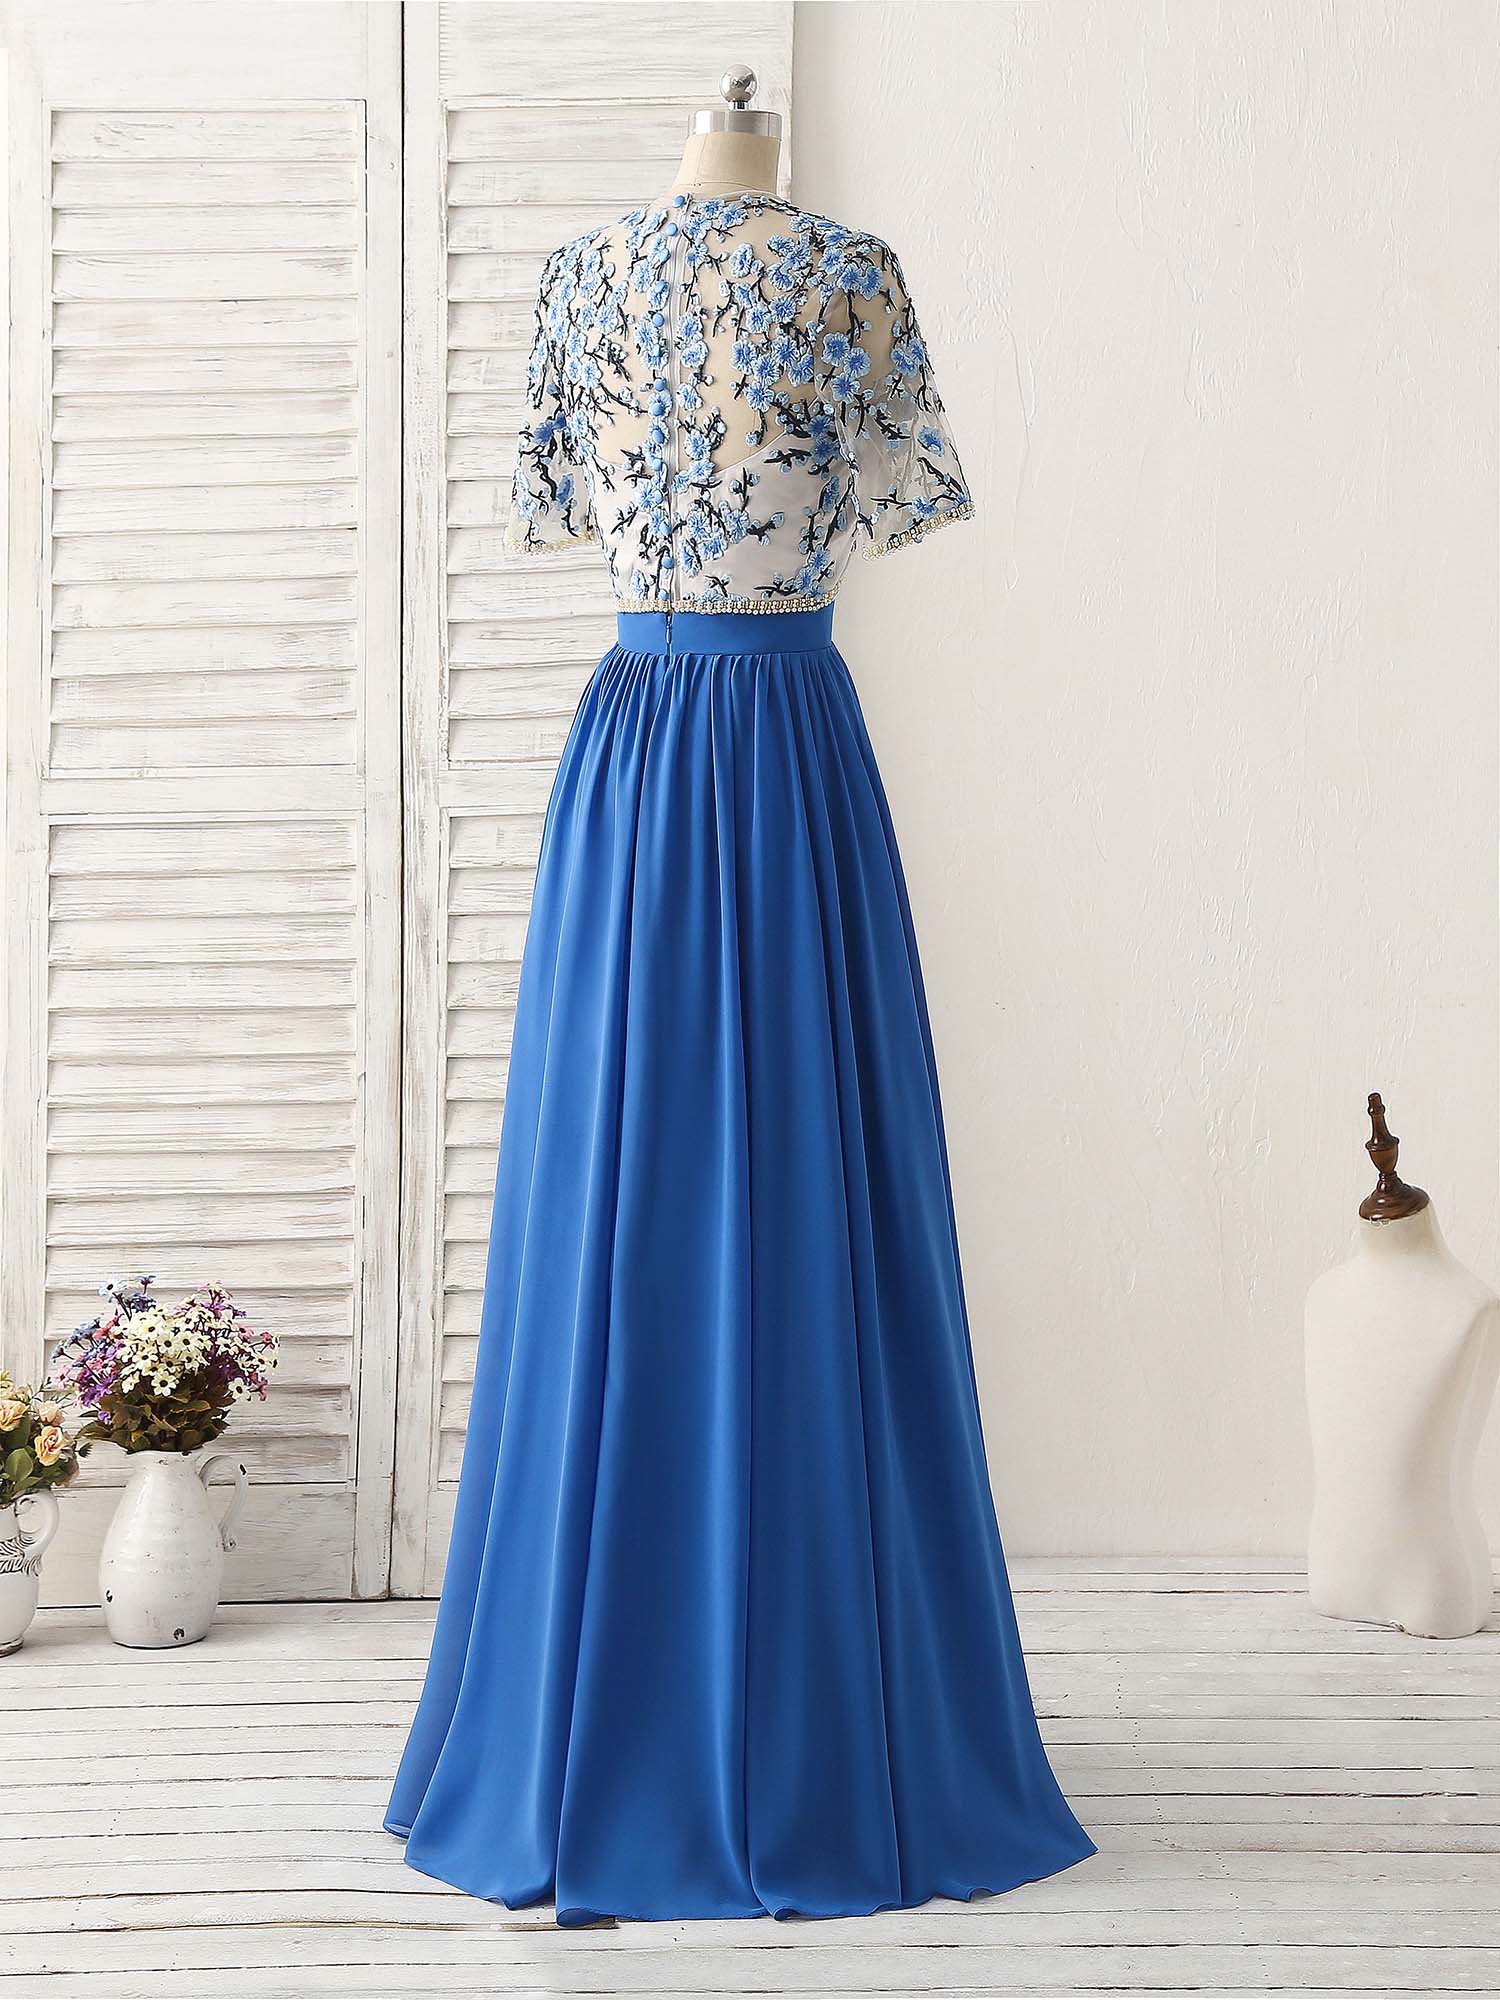 Prom Dresses For Sale, Unique Blue Two Pieces Long Prom Dress Applique Formal Dress